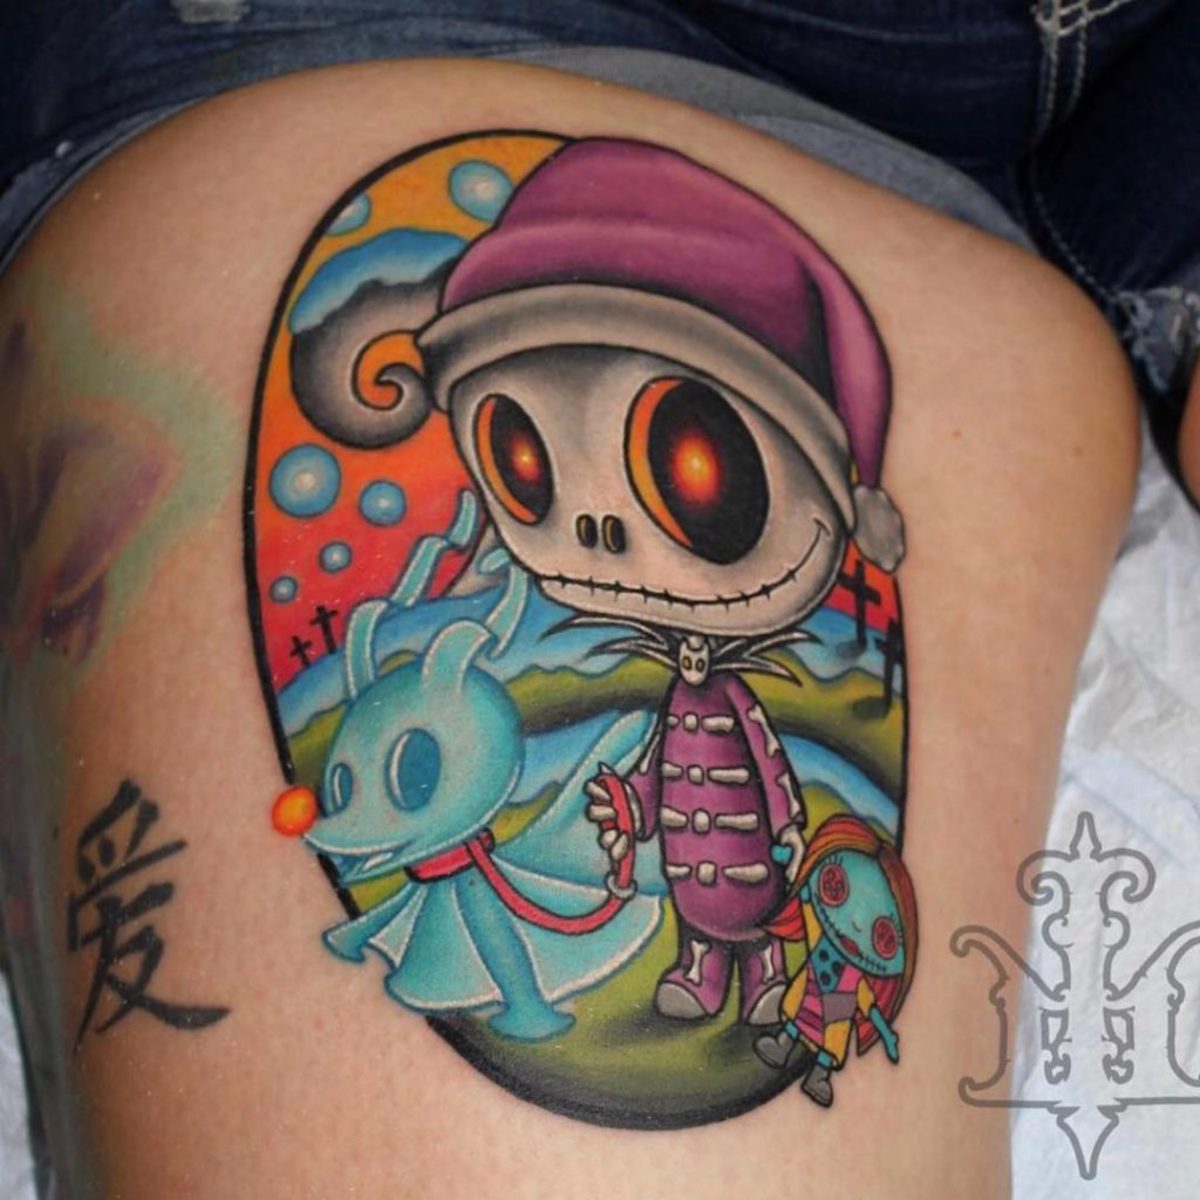 Τατουάζ από τον Jon Leighton